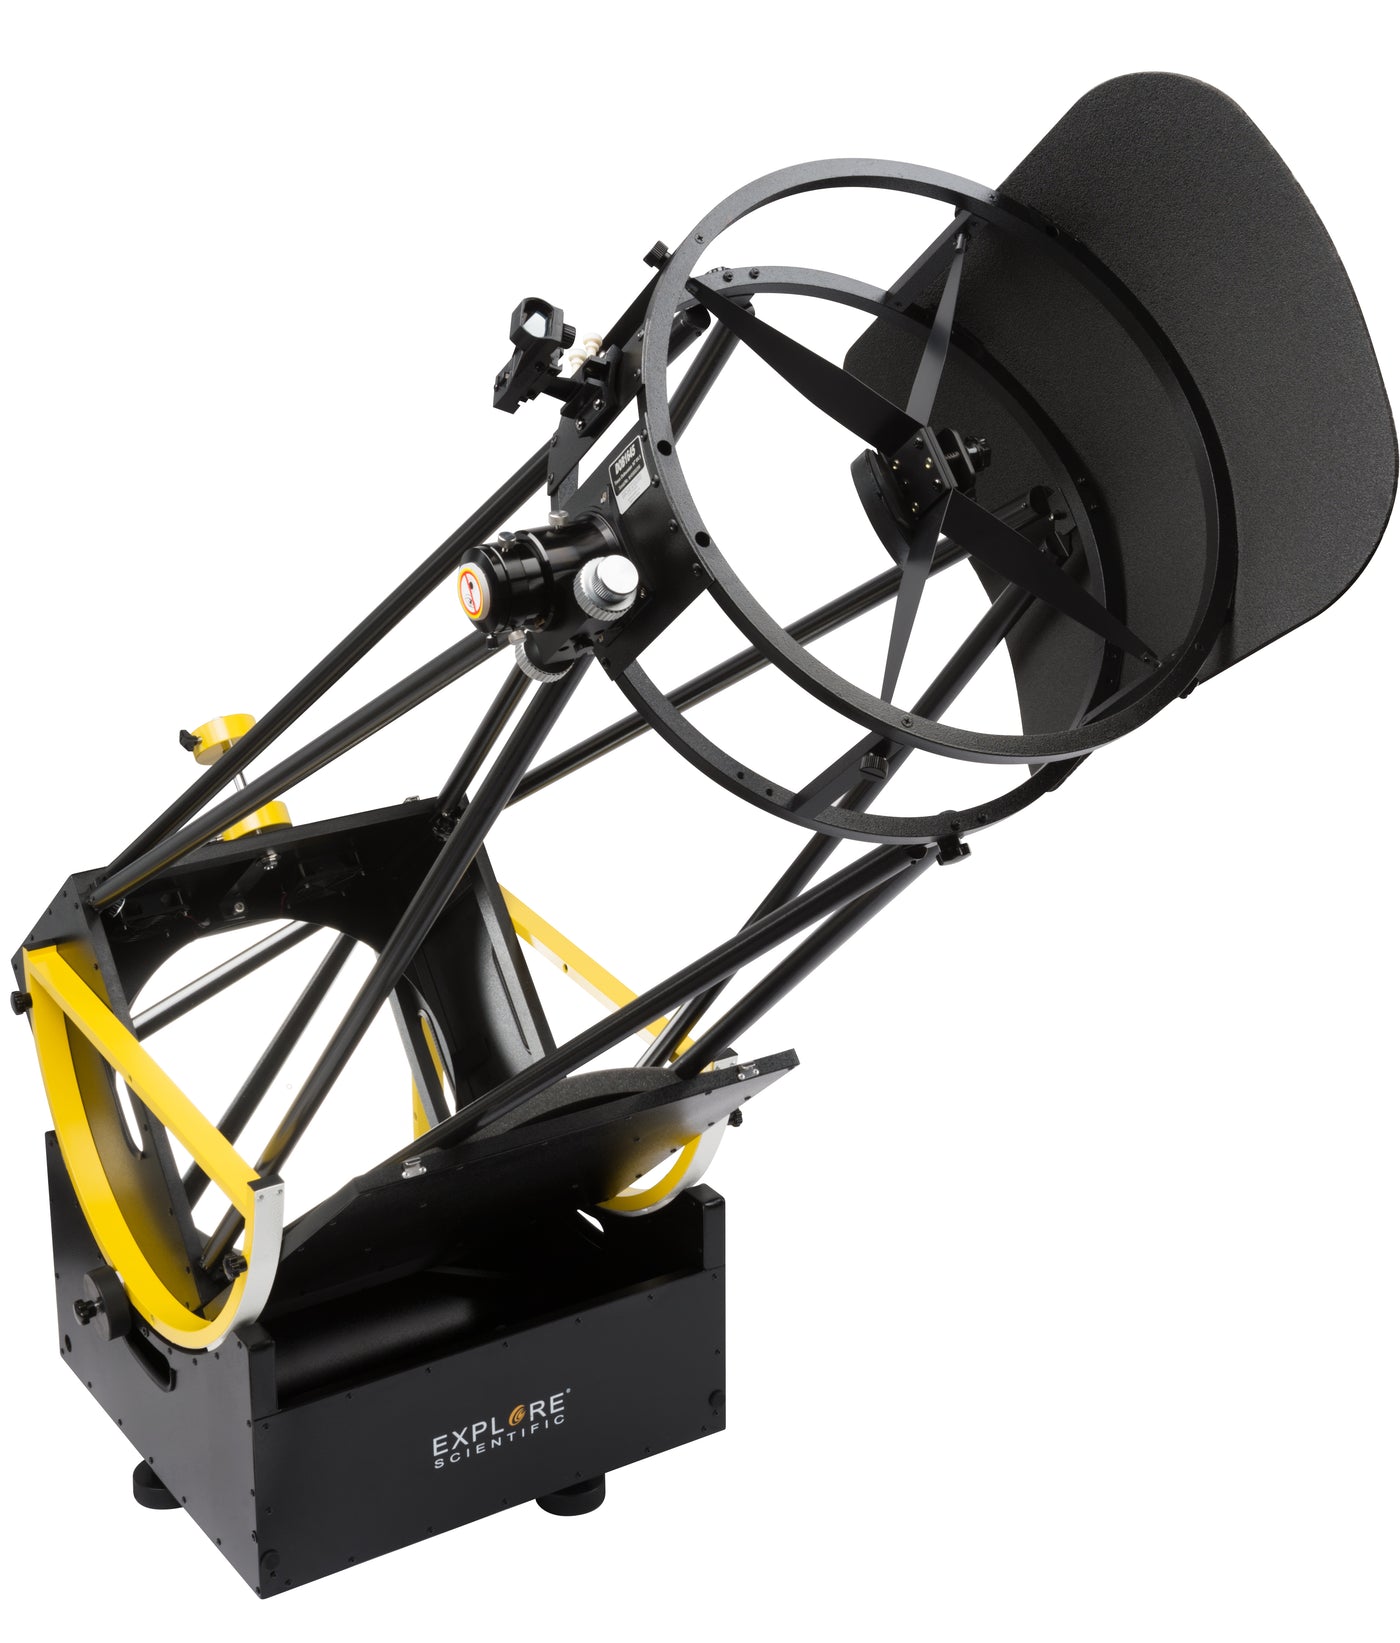 Explore Scientific 406 Dobsonian Telescope - 16"